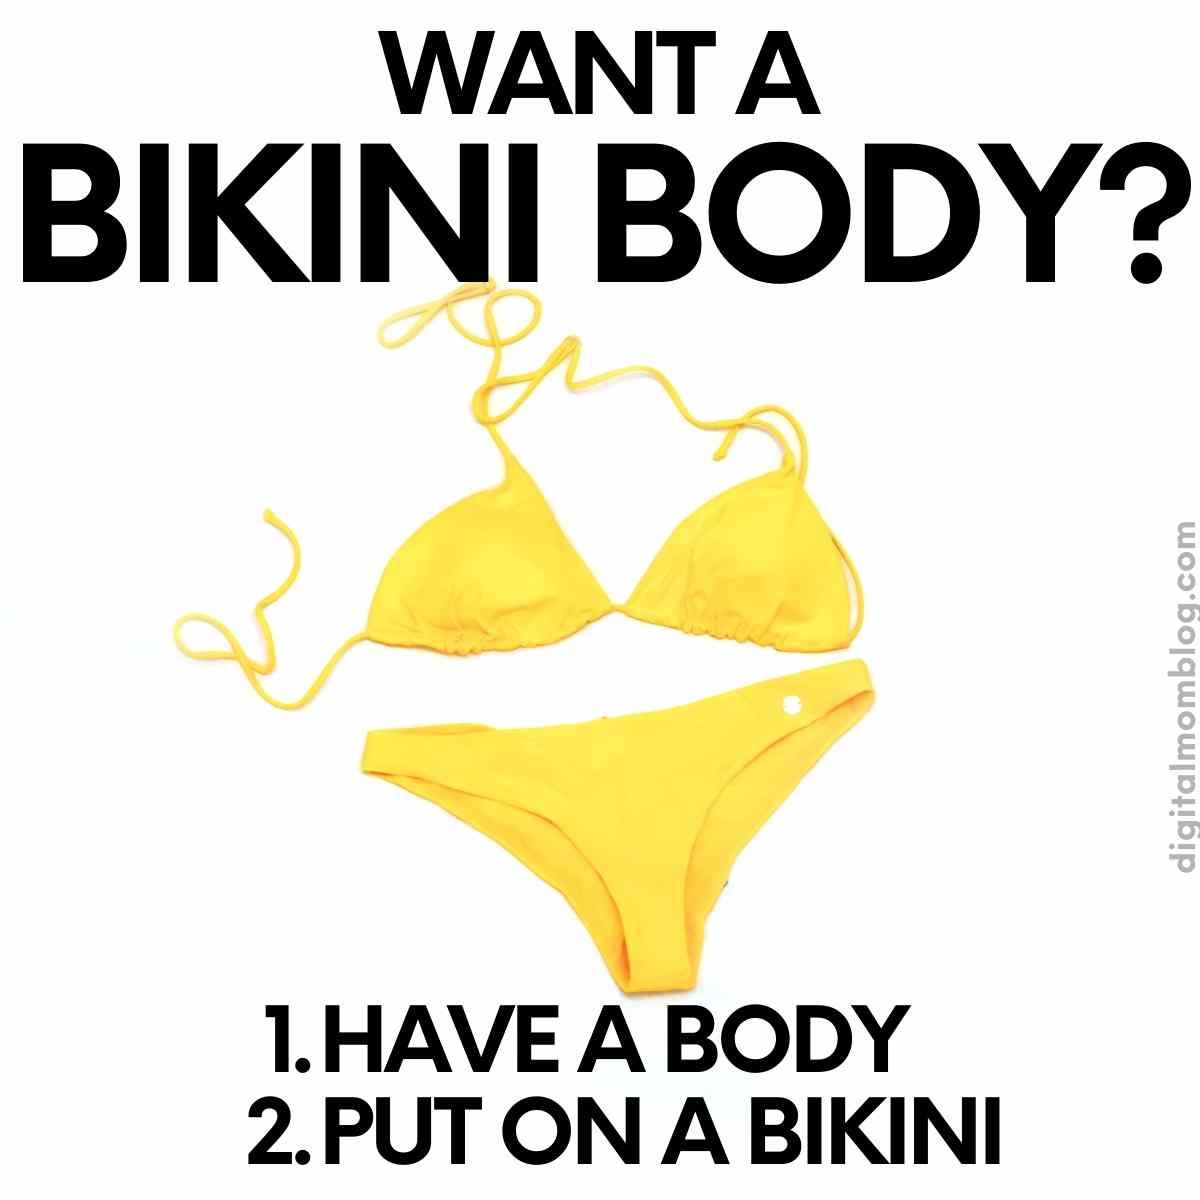 diane madson recommends that bikini body meme pic